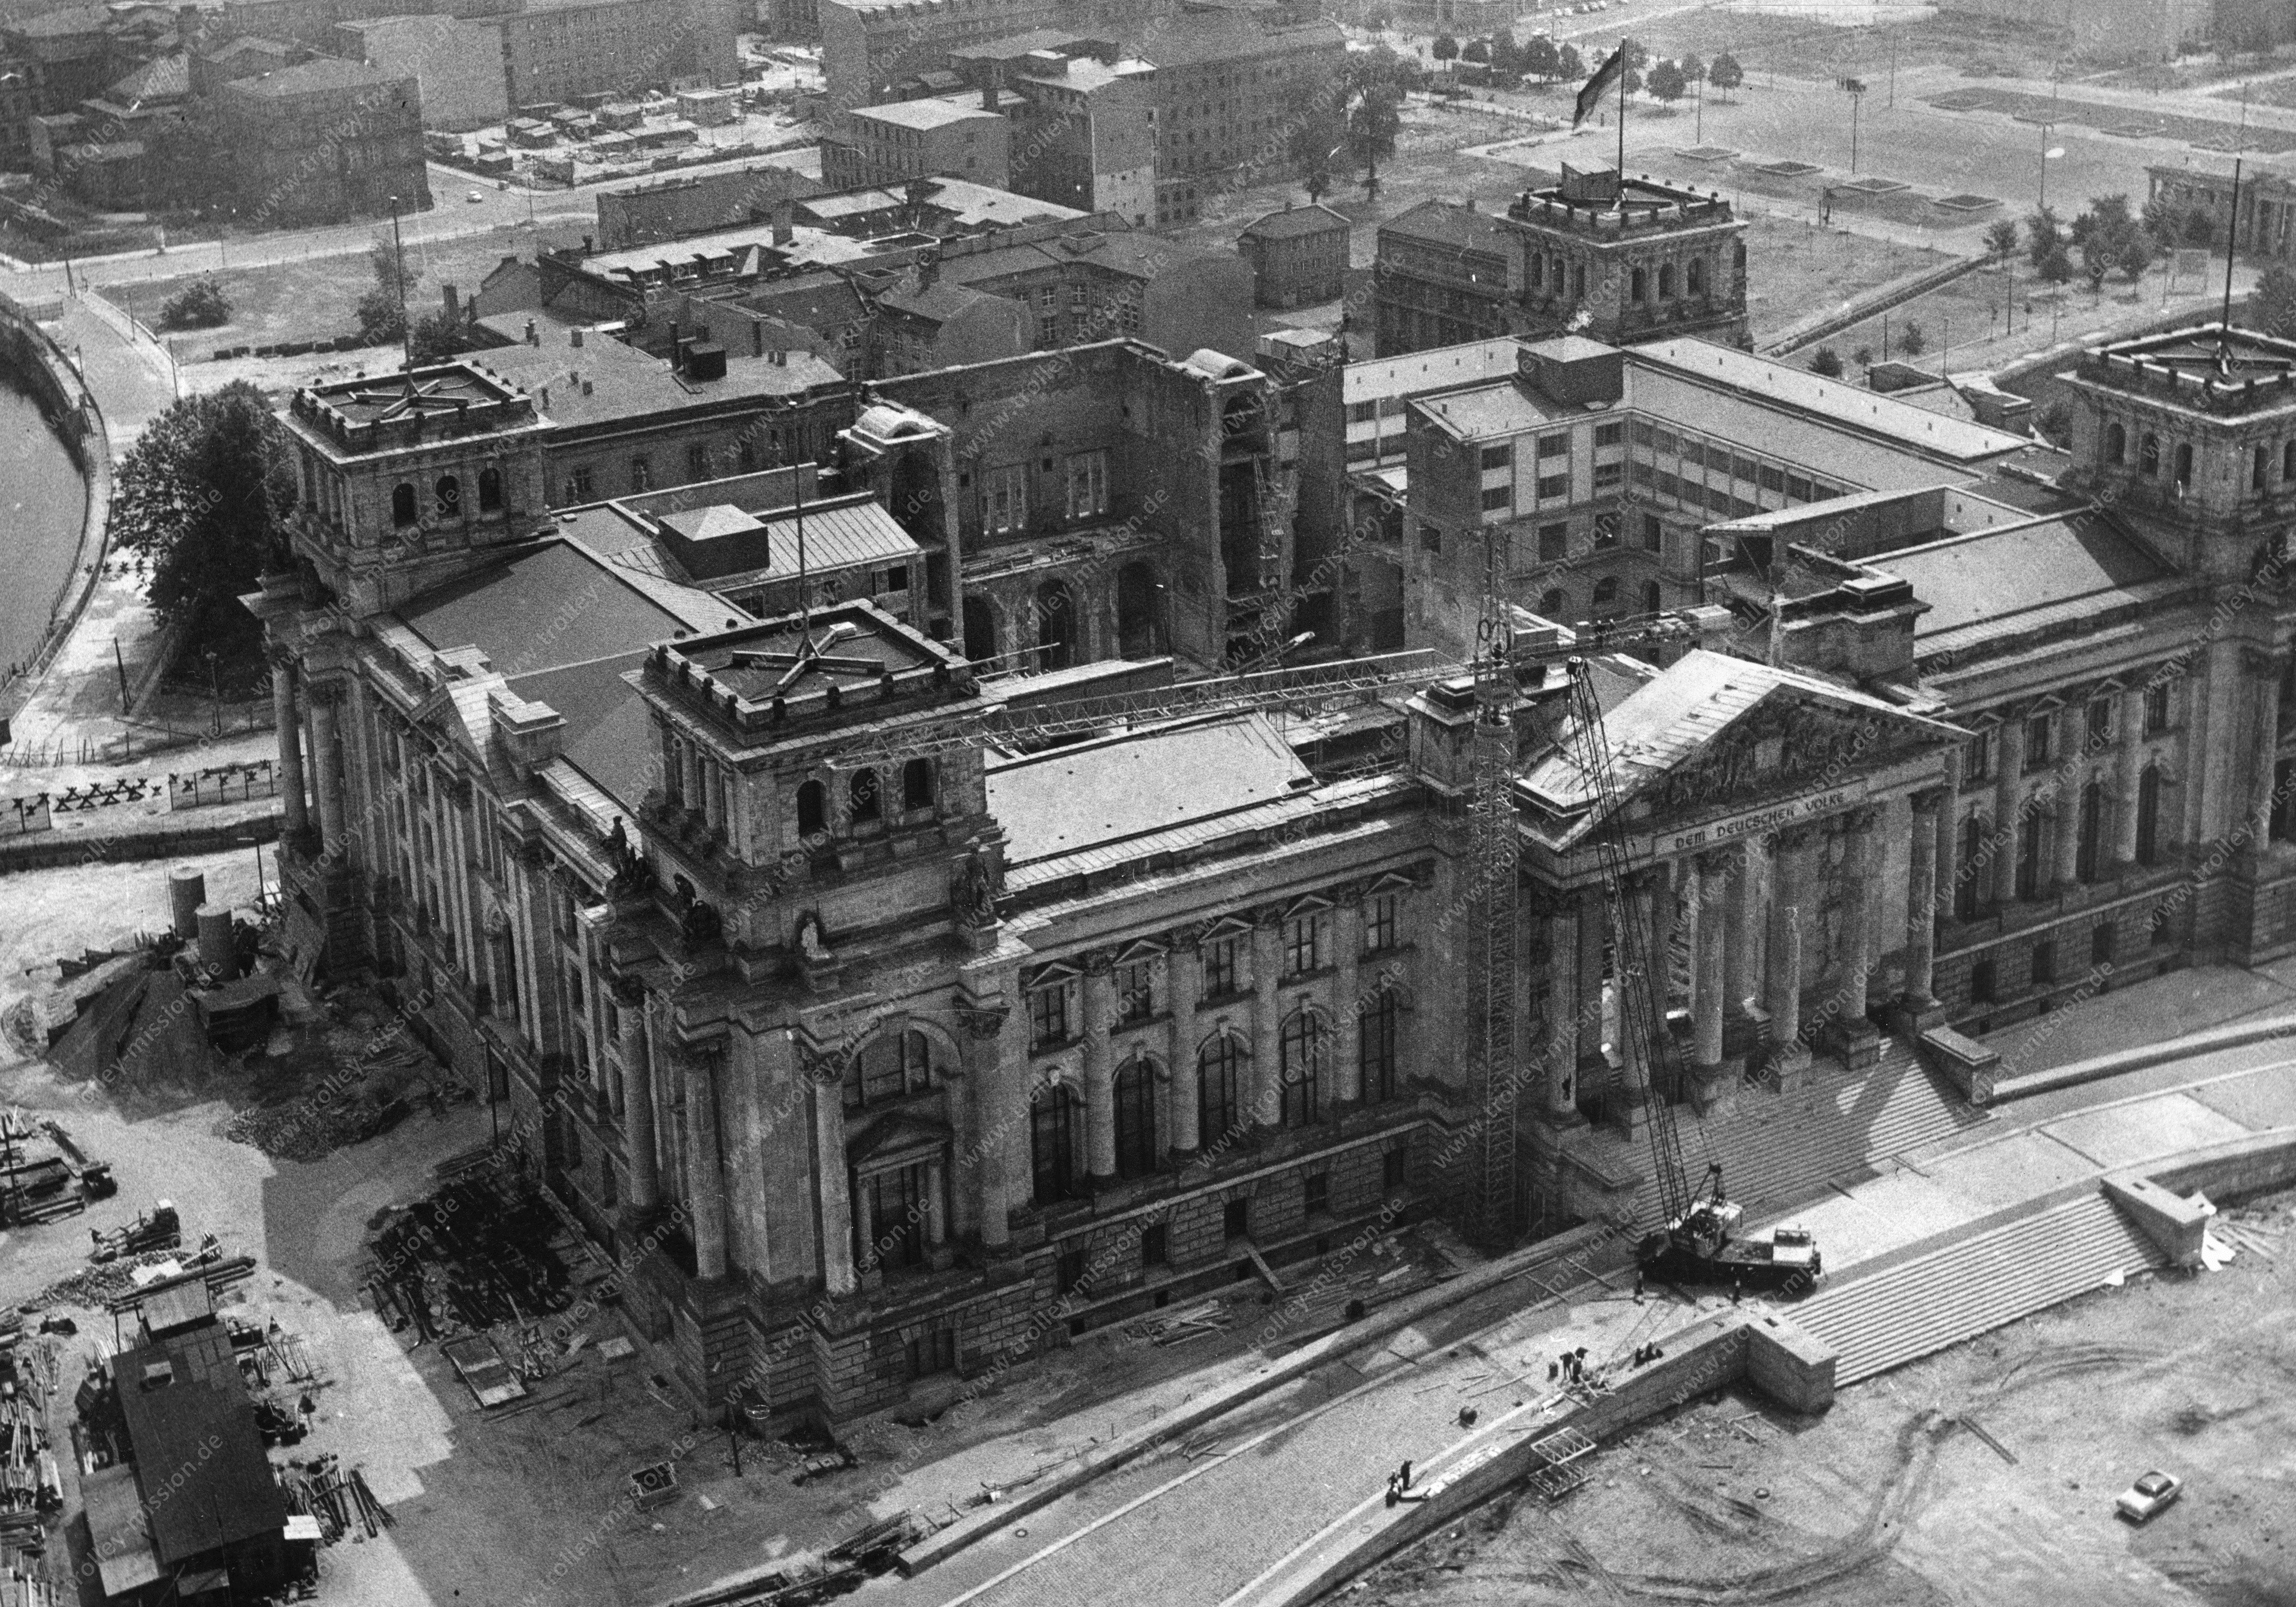 Luftaufnahme vom 6. Juli 1966 - Wiederaufbau des Reichstagsgebäudes in Berlin